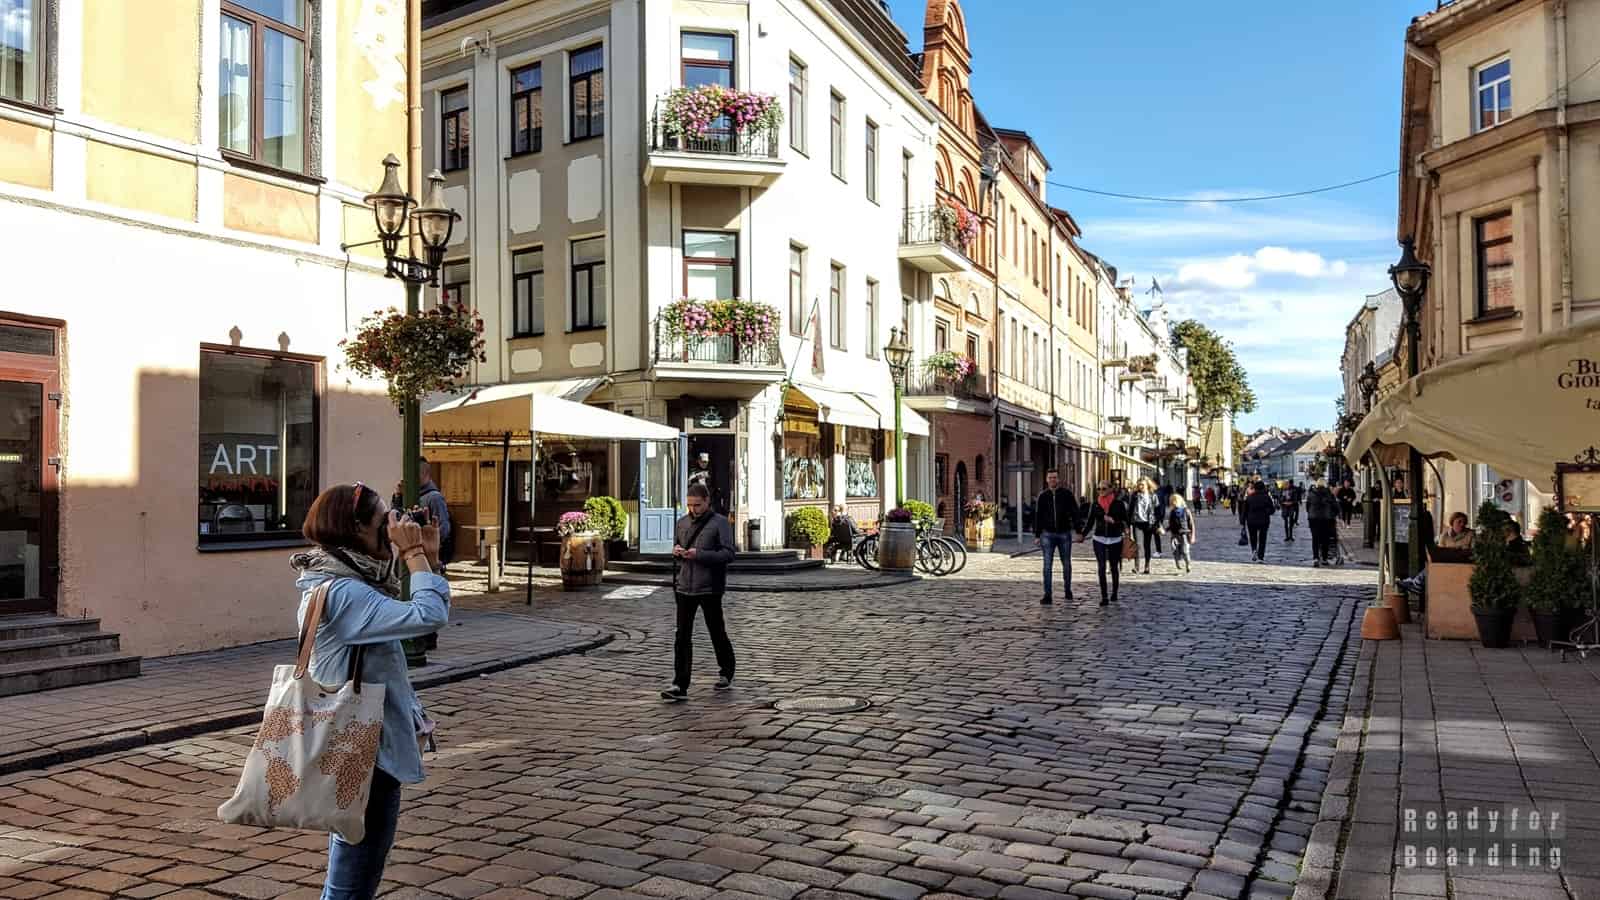 Vilniaus gatvė, Kaunas - Lithuania